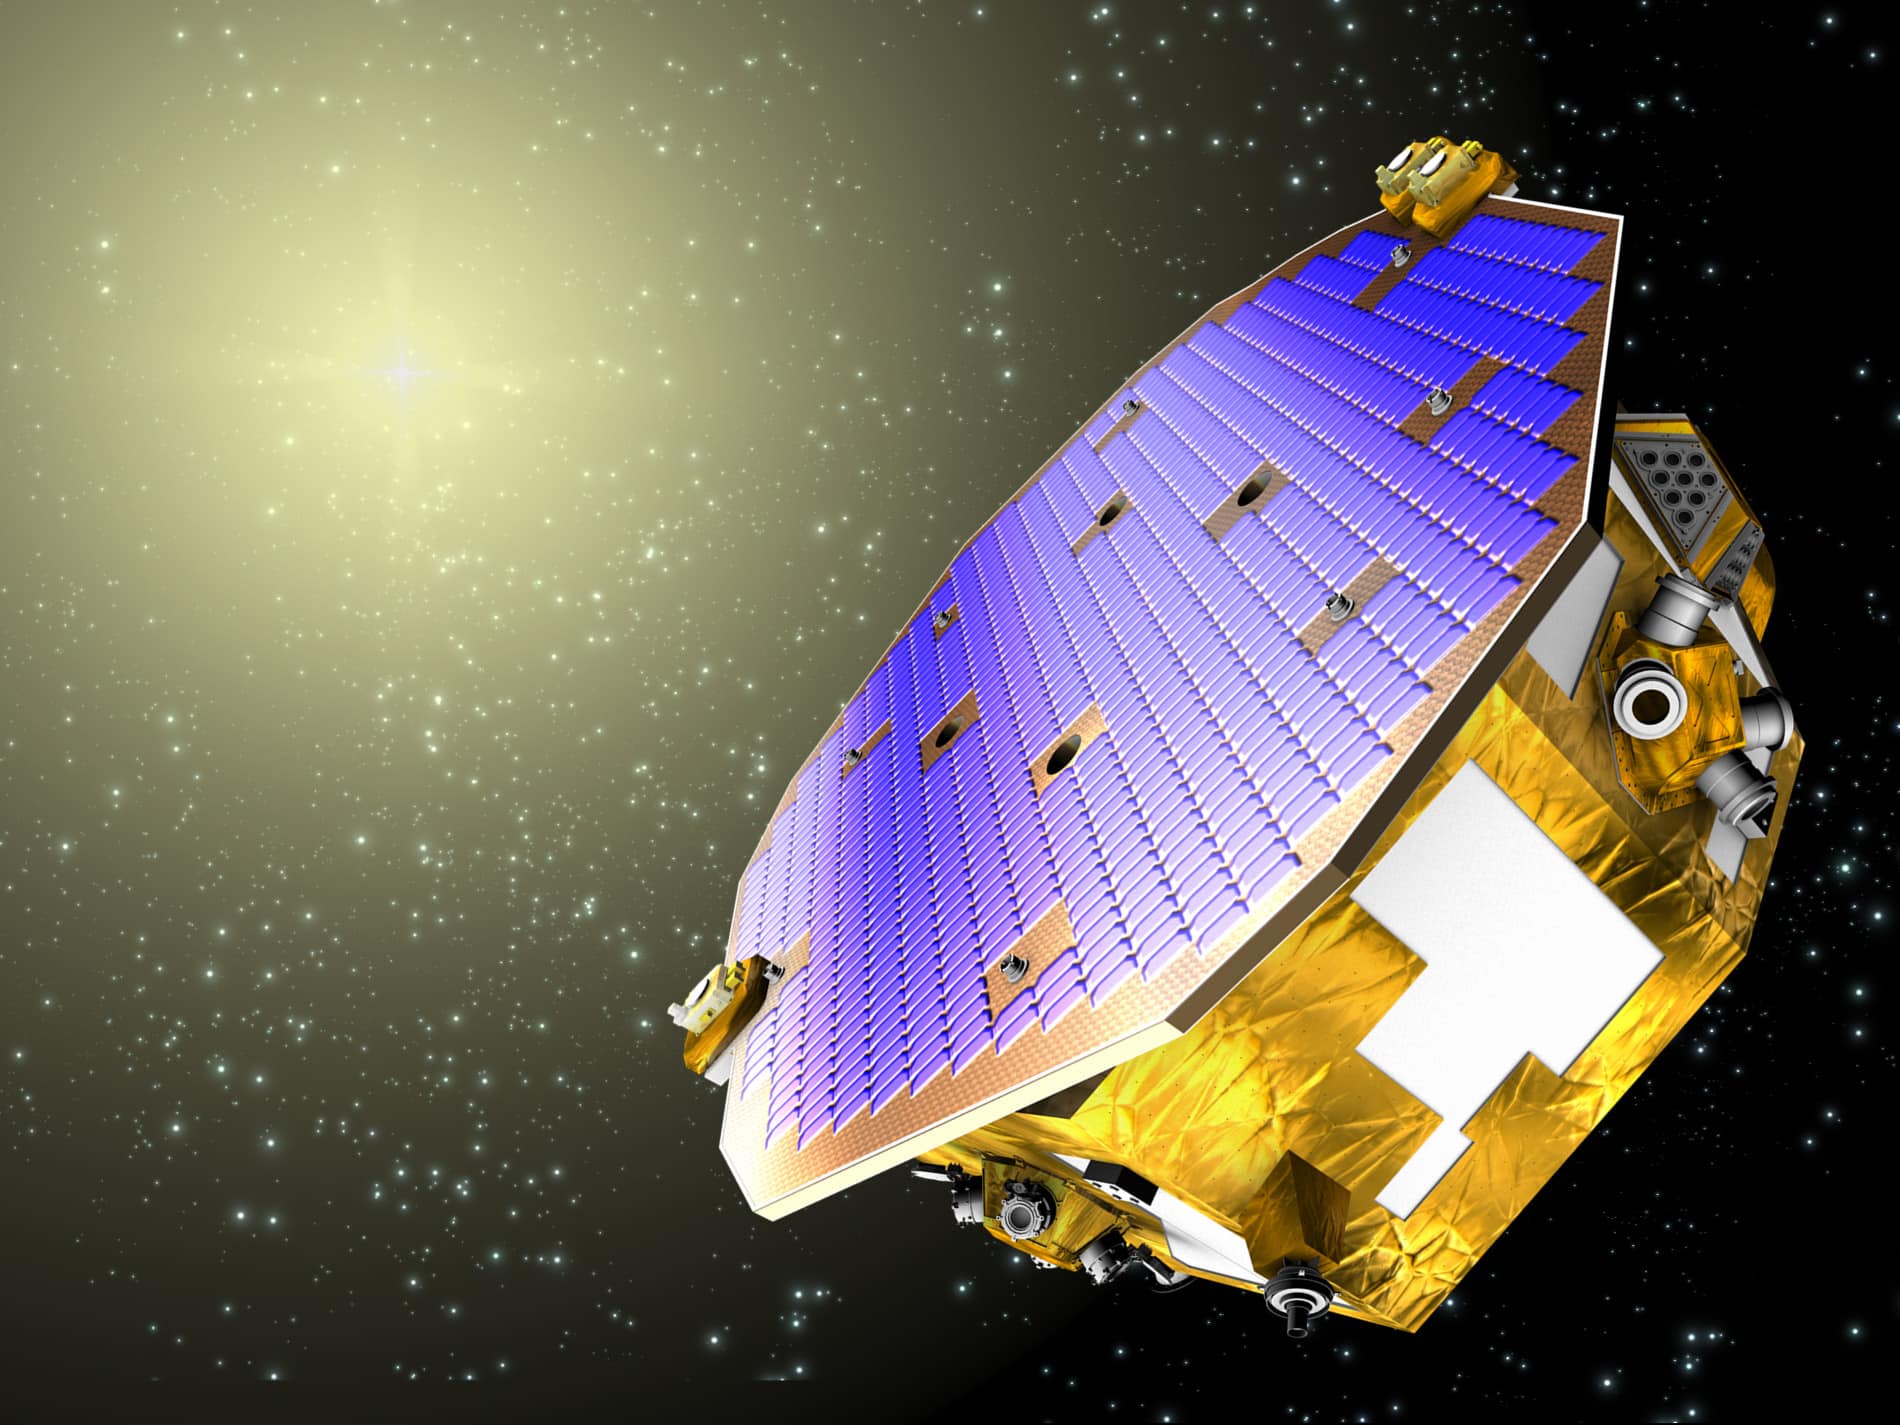 Impressão artistíca do experimento LISA Pathfinder, da ESA, escolhido pelos proponentes do projeto MAQRO como um modelo tecnológico para levar a mecânica quântica para o espaço. Crédito da Imagem: ESA.